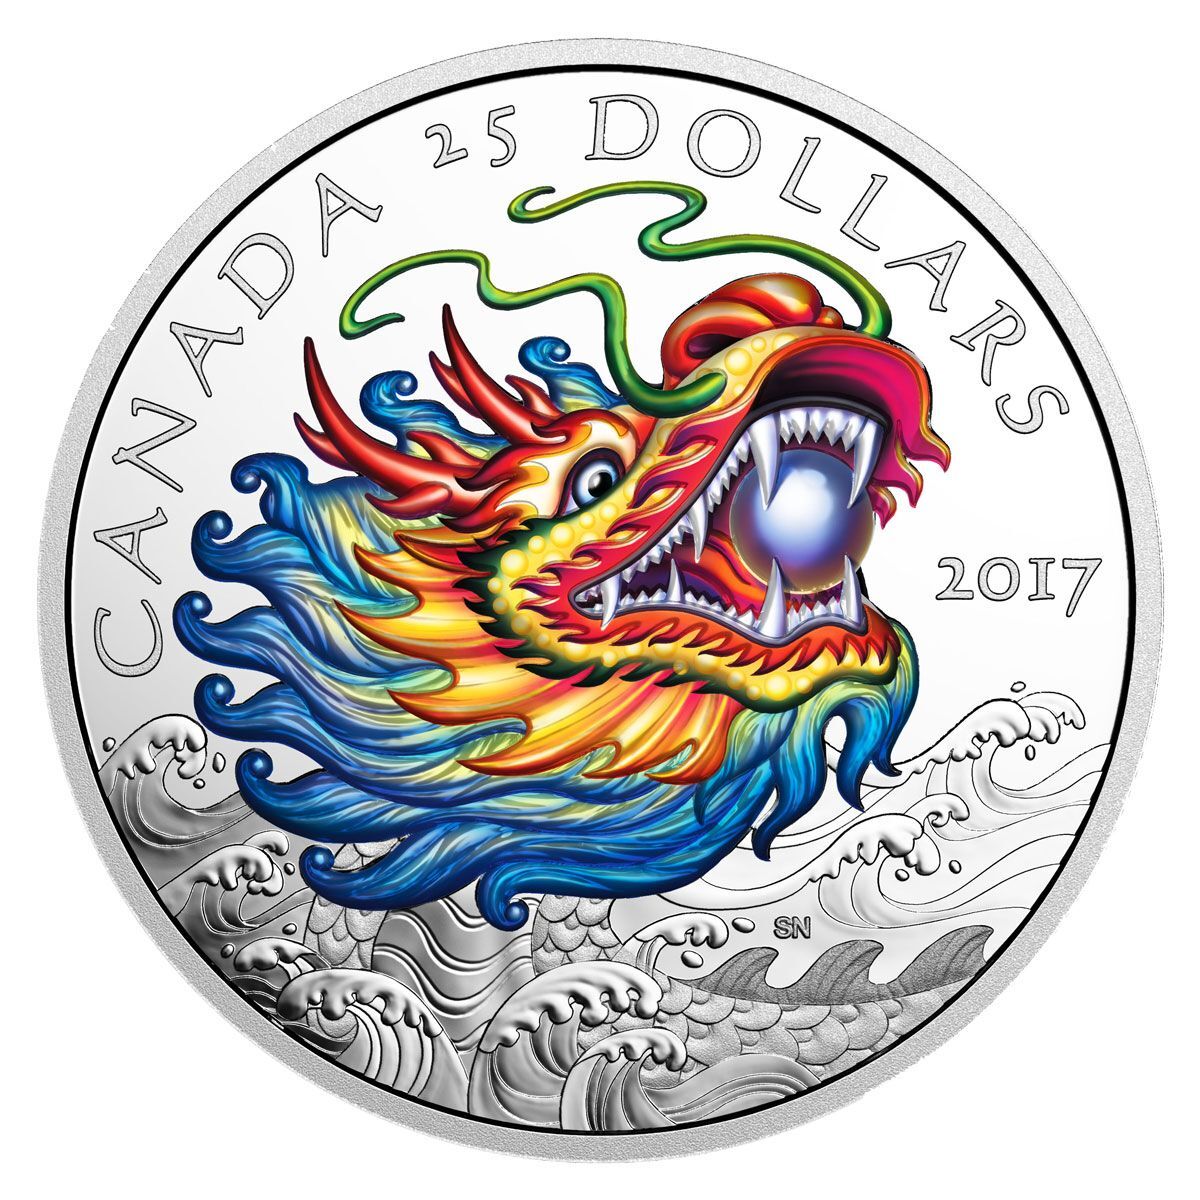 2017 Canada Dragon Boat Festival Coloured Silver Proof Coin